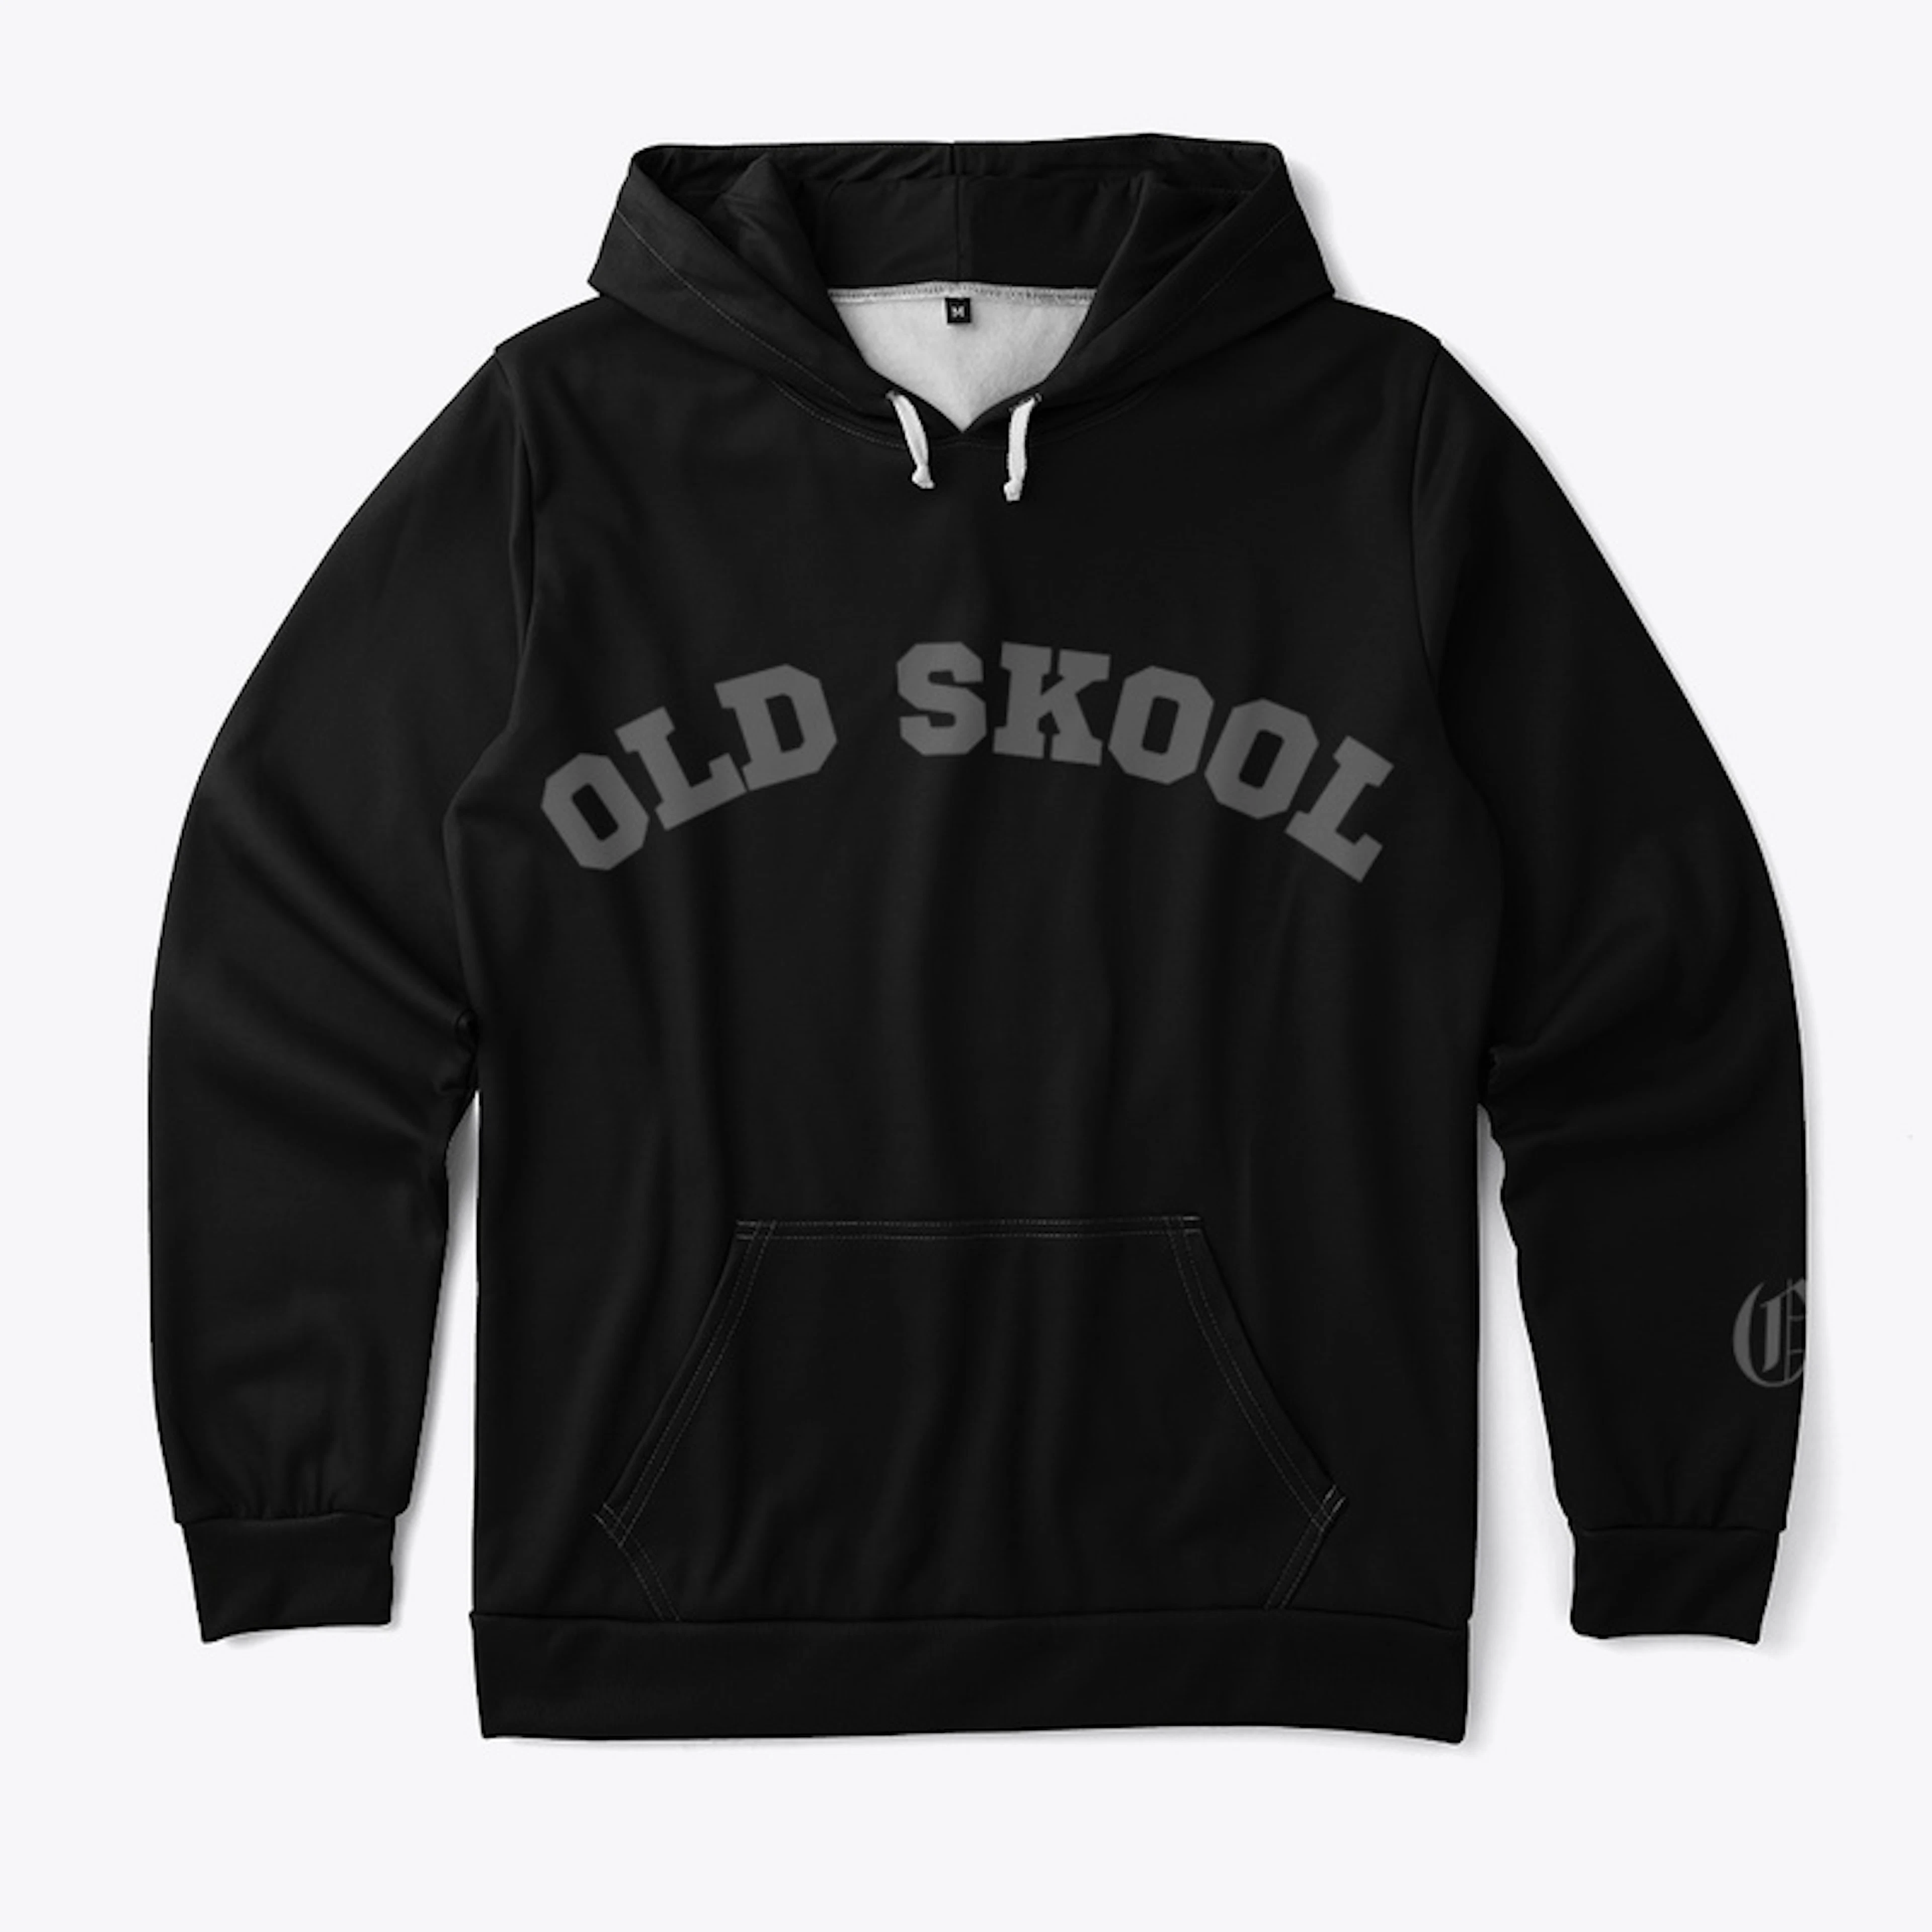 Old Skool Hoodie